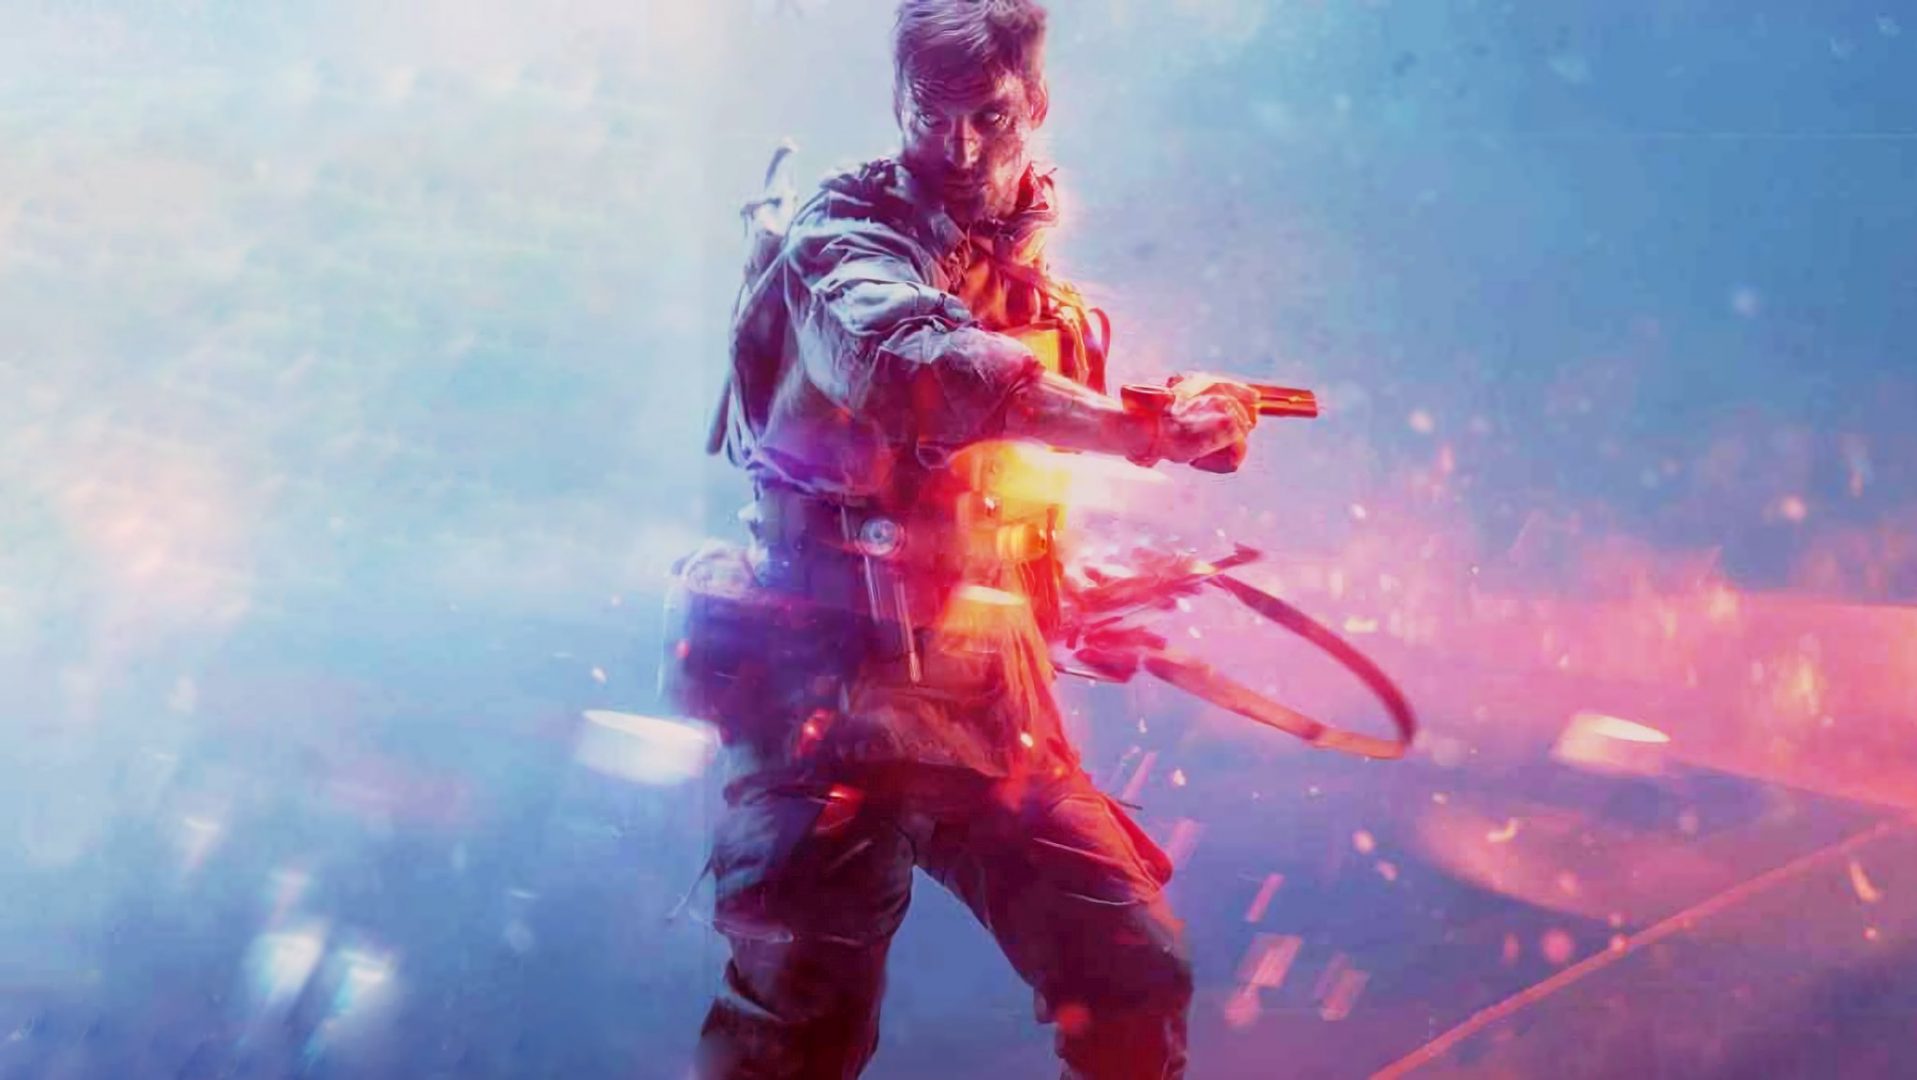 ¡Confirmado! Battlefield V tendrá un Modo Battle Royale | Nuevo gameplay